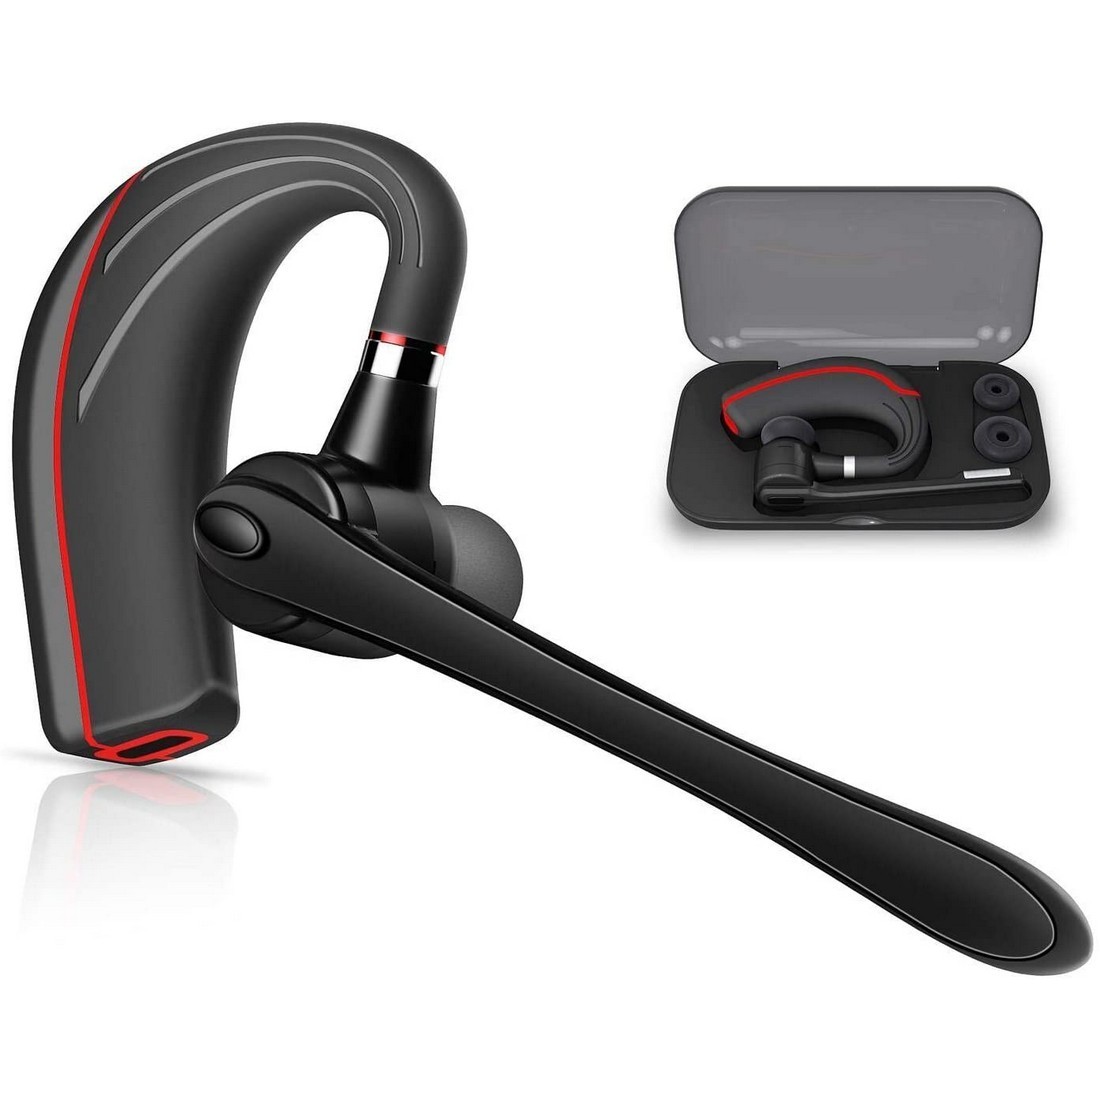 Bluetooth ヘッドセット5.0 高音質片耳 内蔵マイクBluetoothイヤホン ビジネス 快適装着 ハンズフリー通話